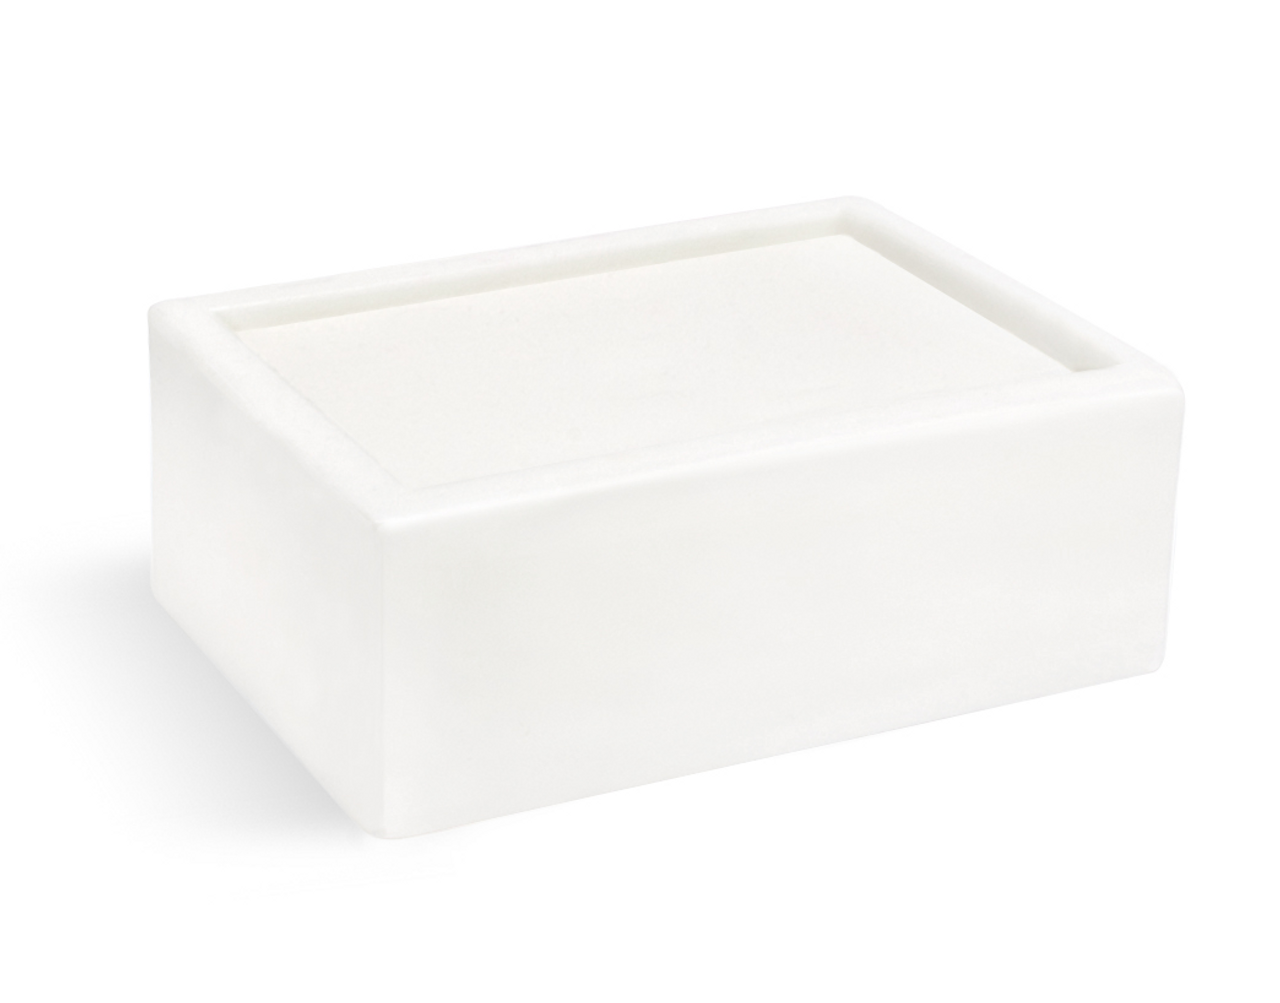 Basic Clear MP Soap Base - 23 lb Block - Wholesale Supplies Plus